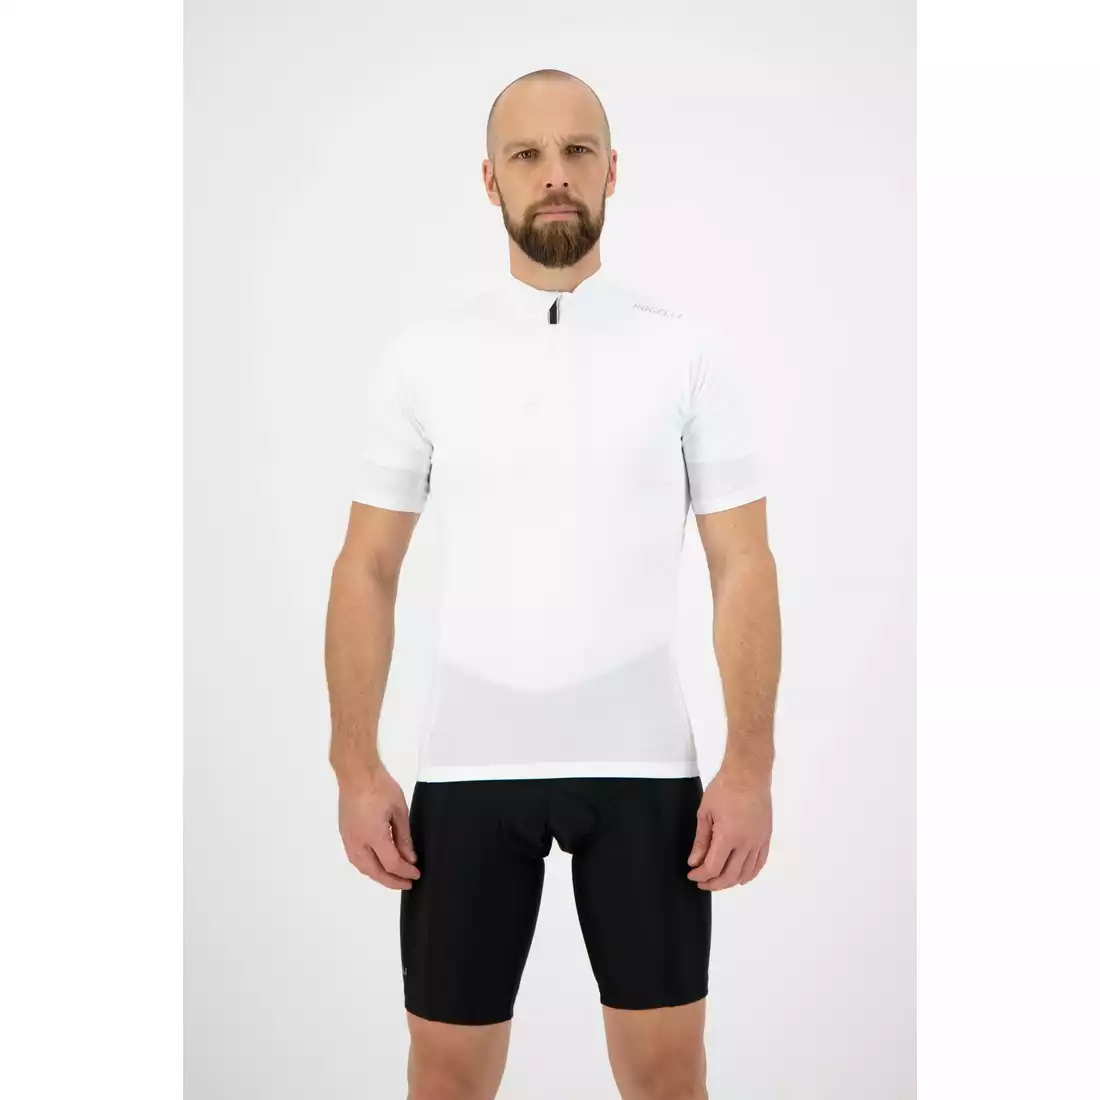 Rogelli CORE men's cycling jersey, white